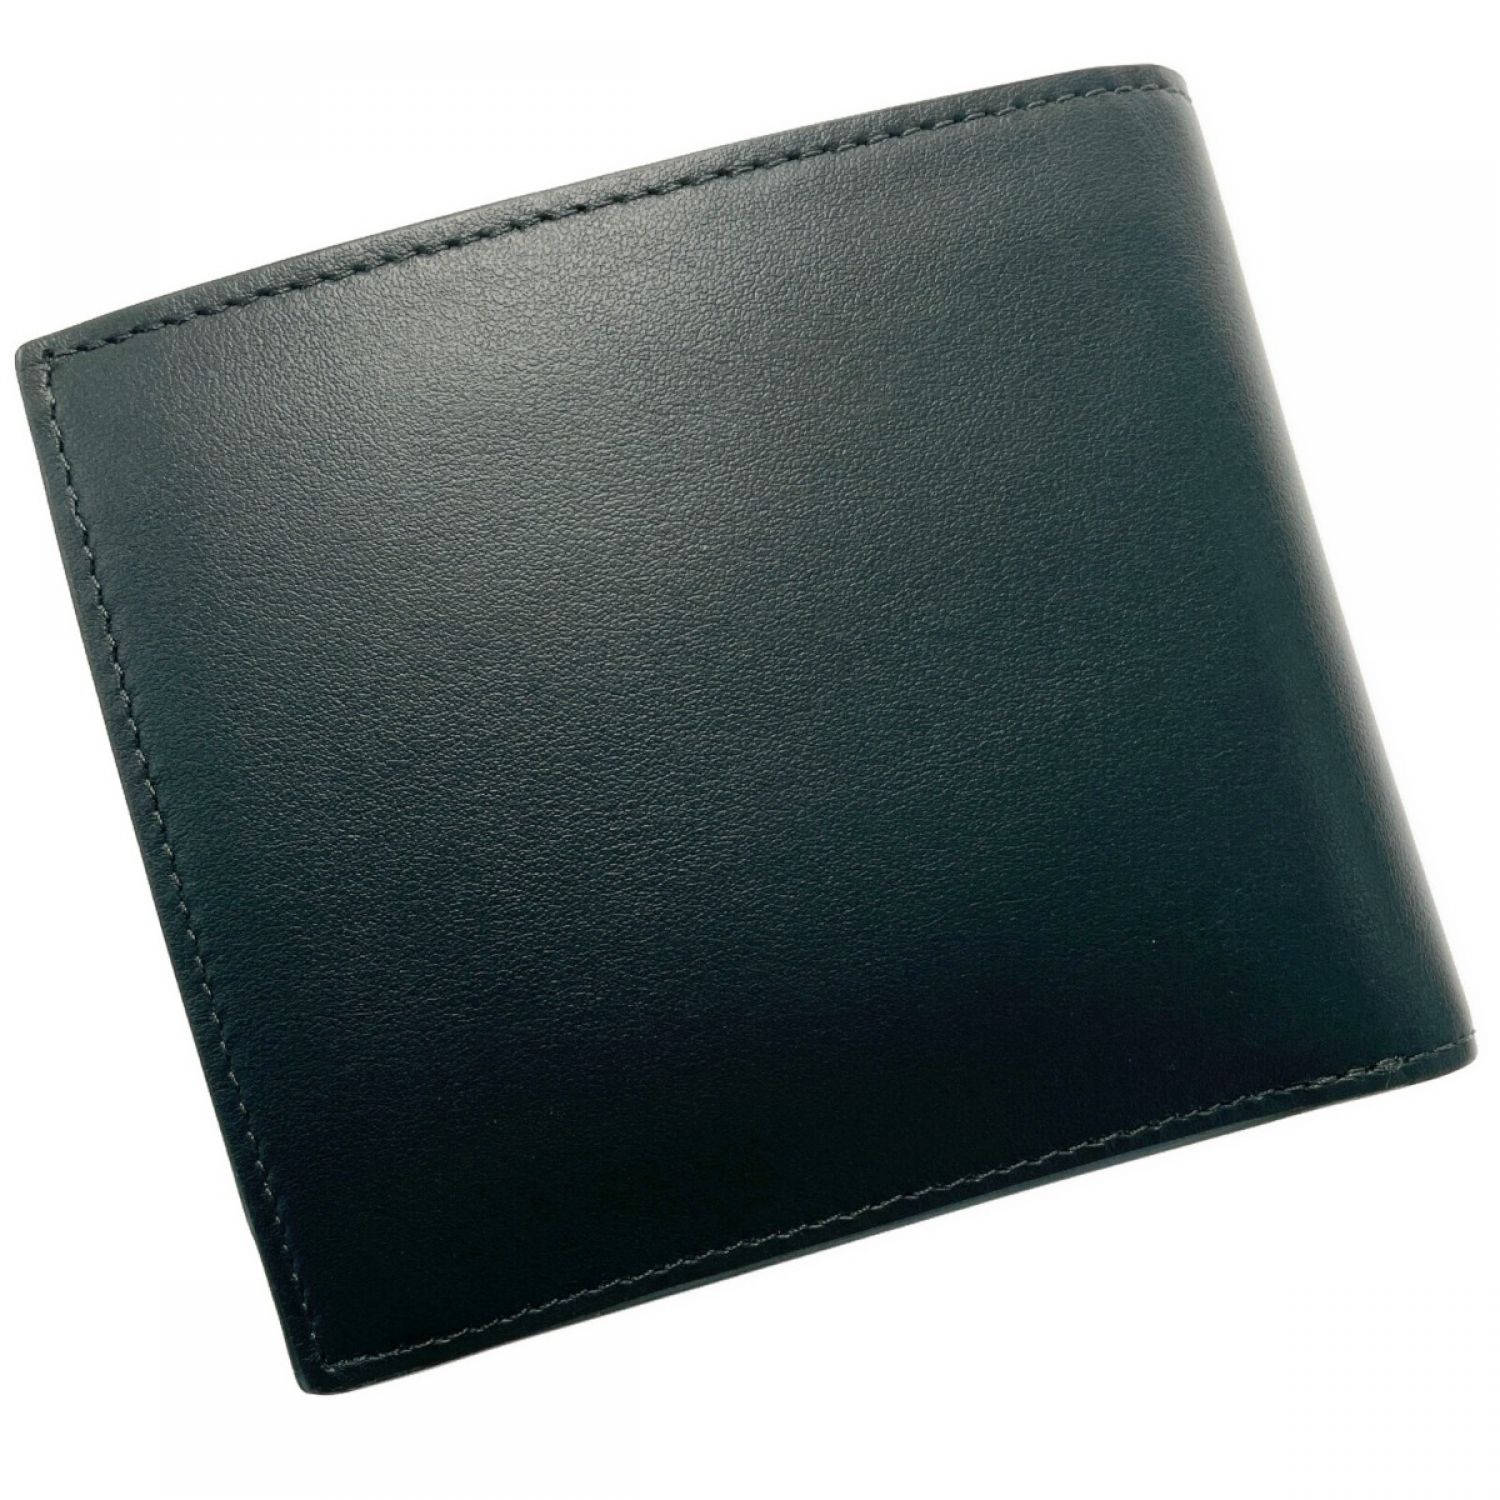 新品 ポールスミス 二つ折り財布 ネイビー PSC794 財布 レザー メンズ